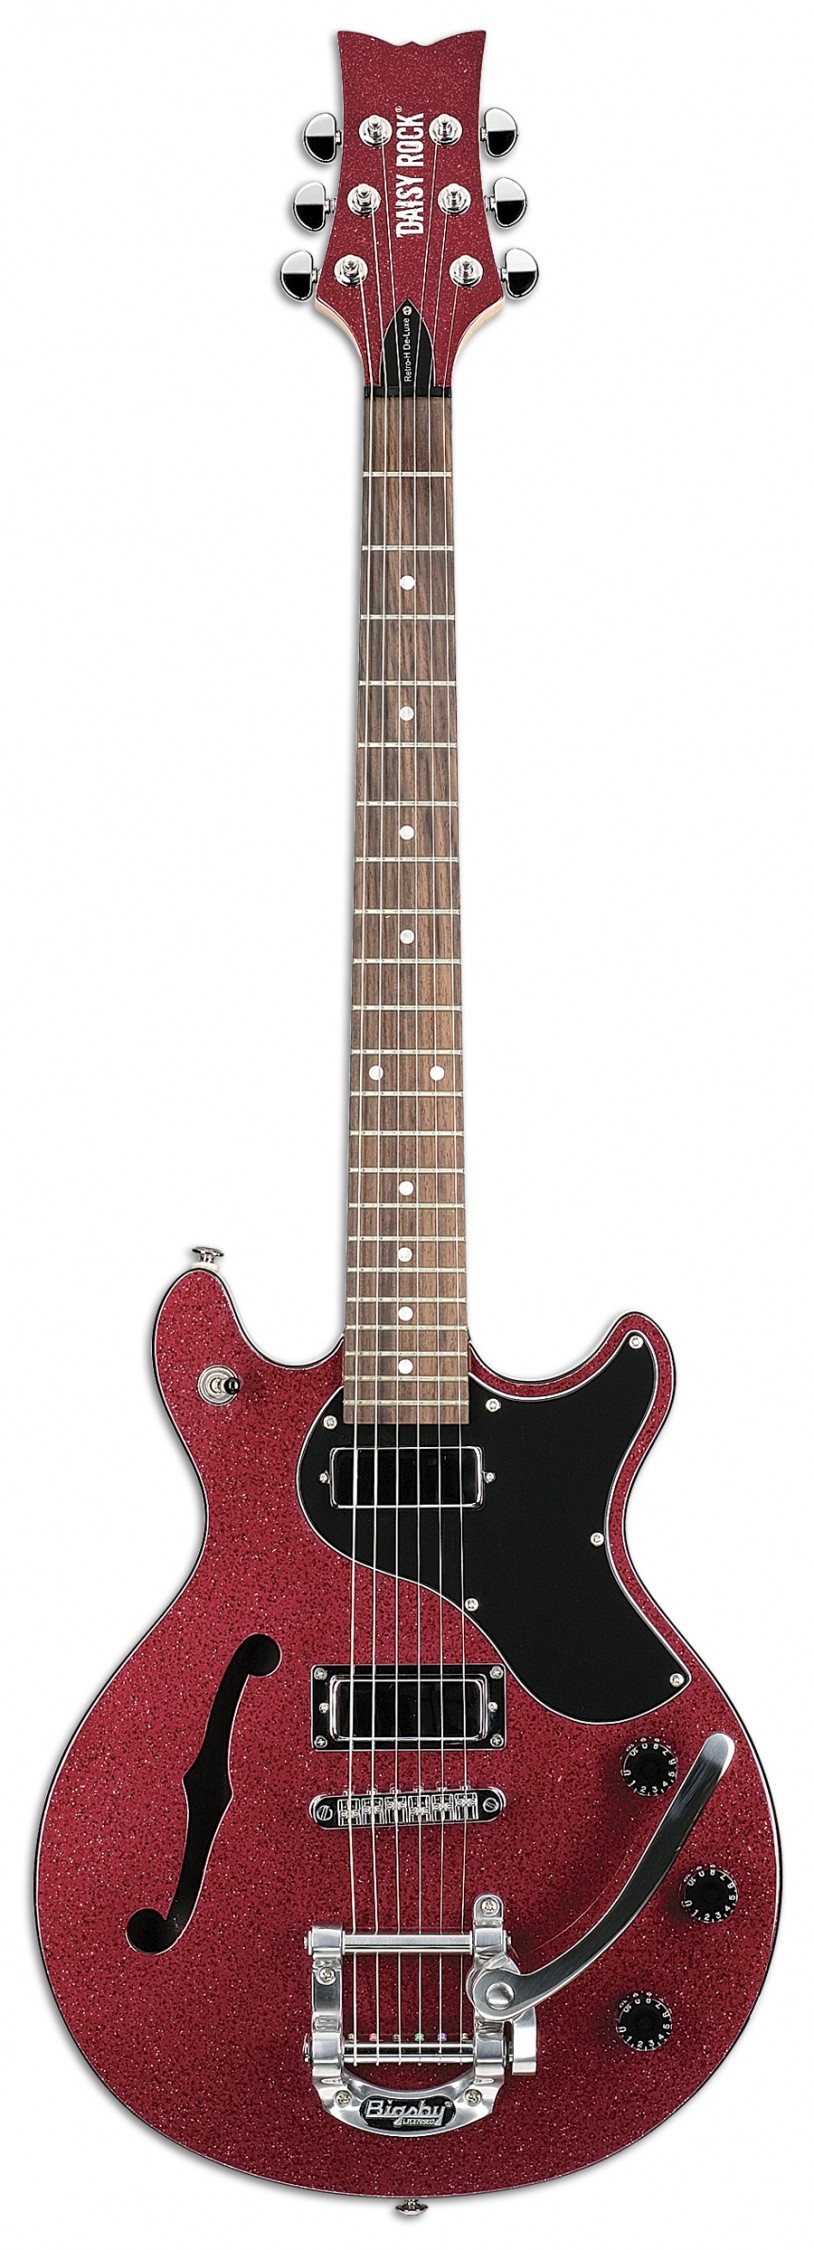 デイジー・ロック・ギターおよびベース15モデルを発売開始 | ニュース